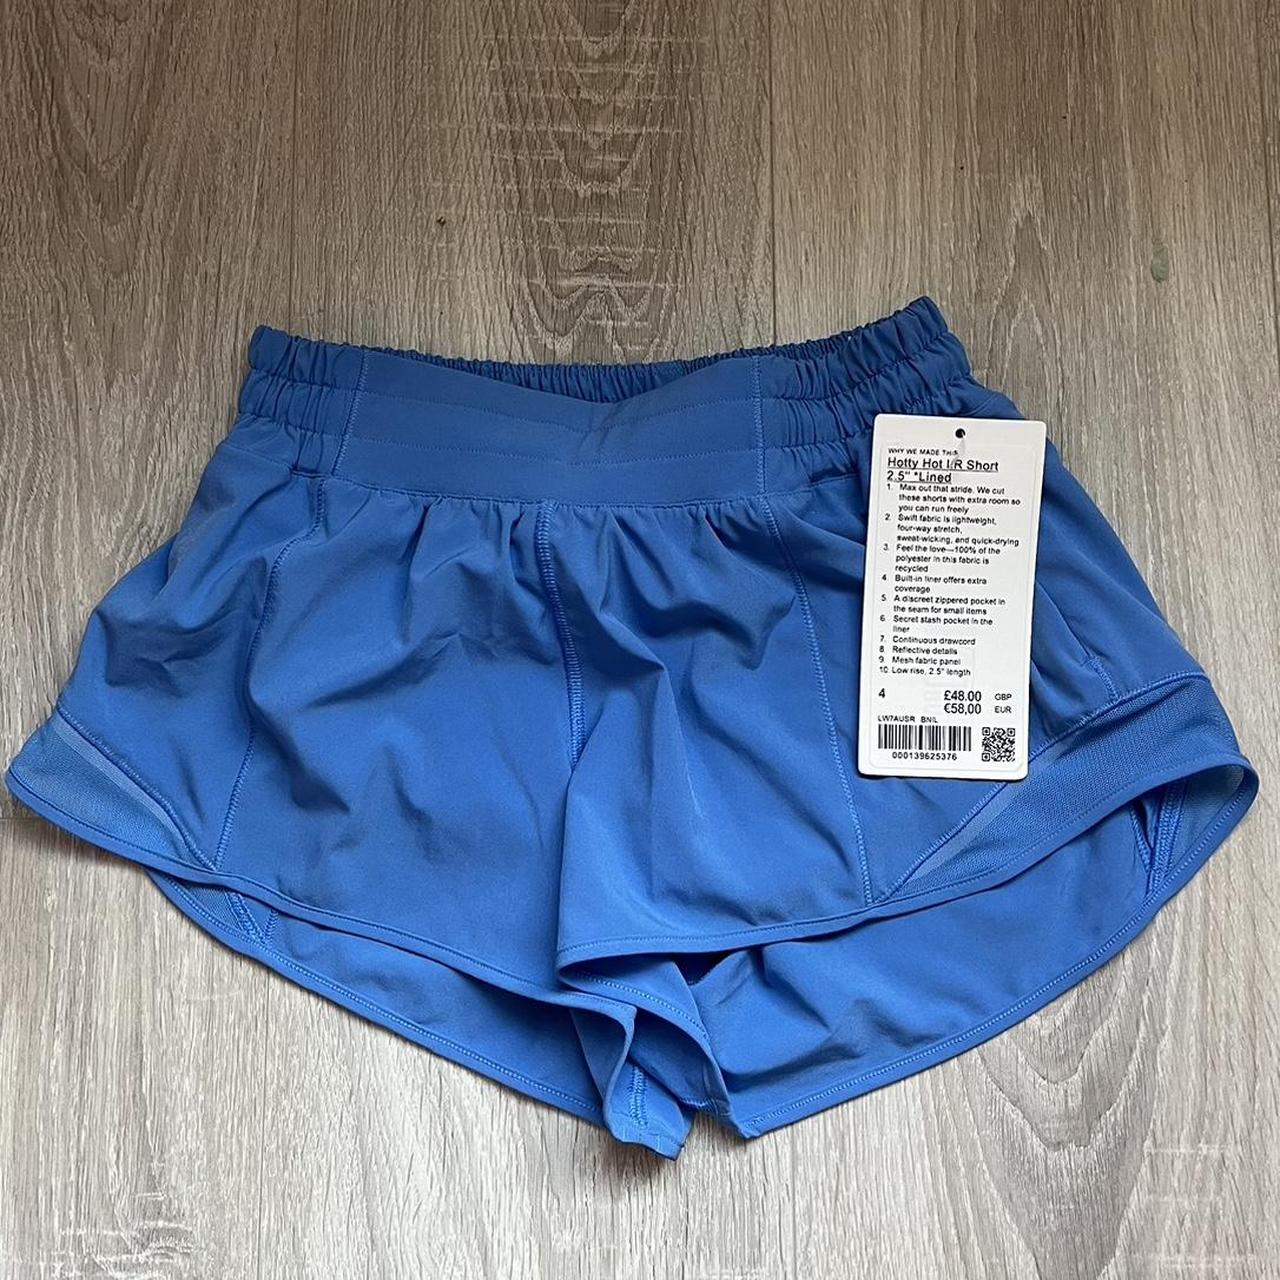 Lululemon Shorts Size 4 -  UK